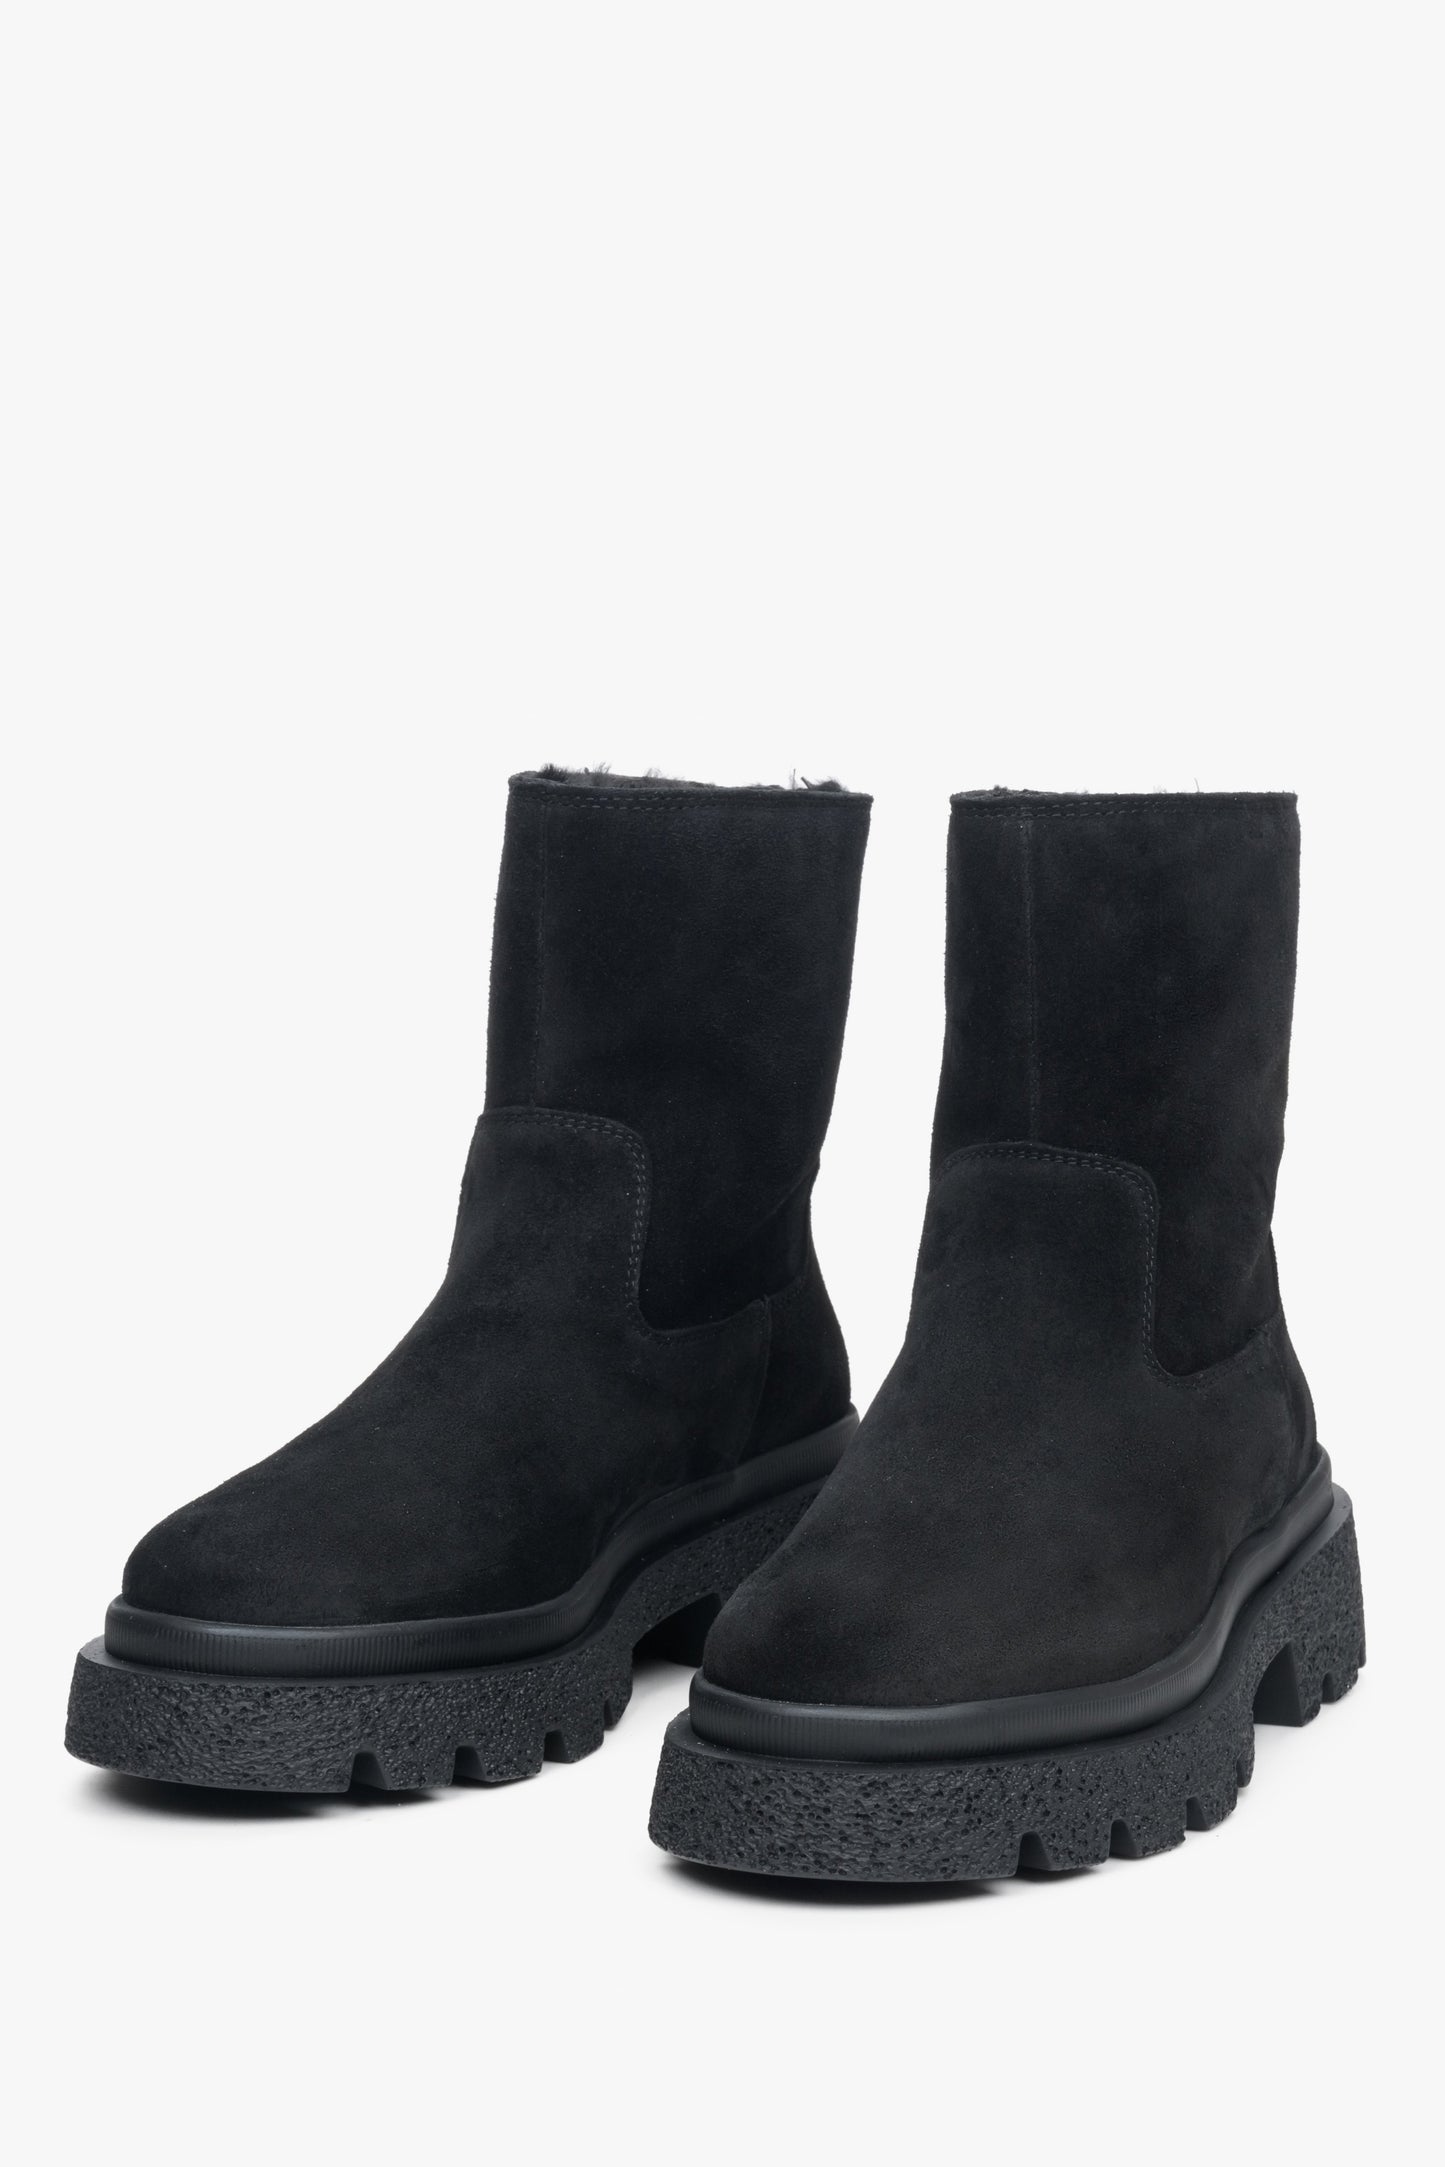 Damskie, welurowe botki na zimę w kolorze czarnym Estro - zbliżenie na czubek buta.